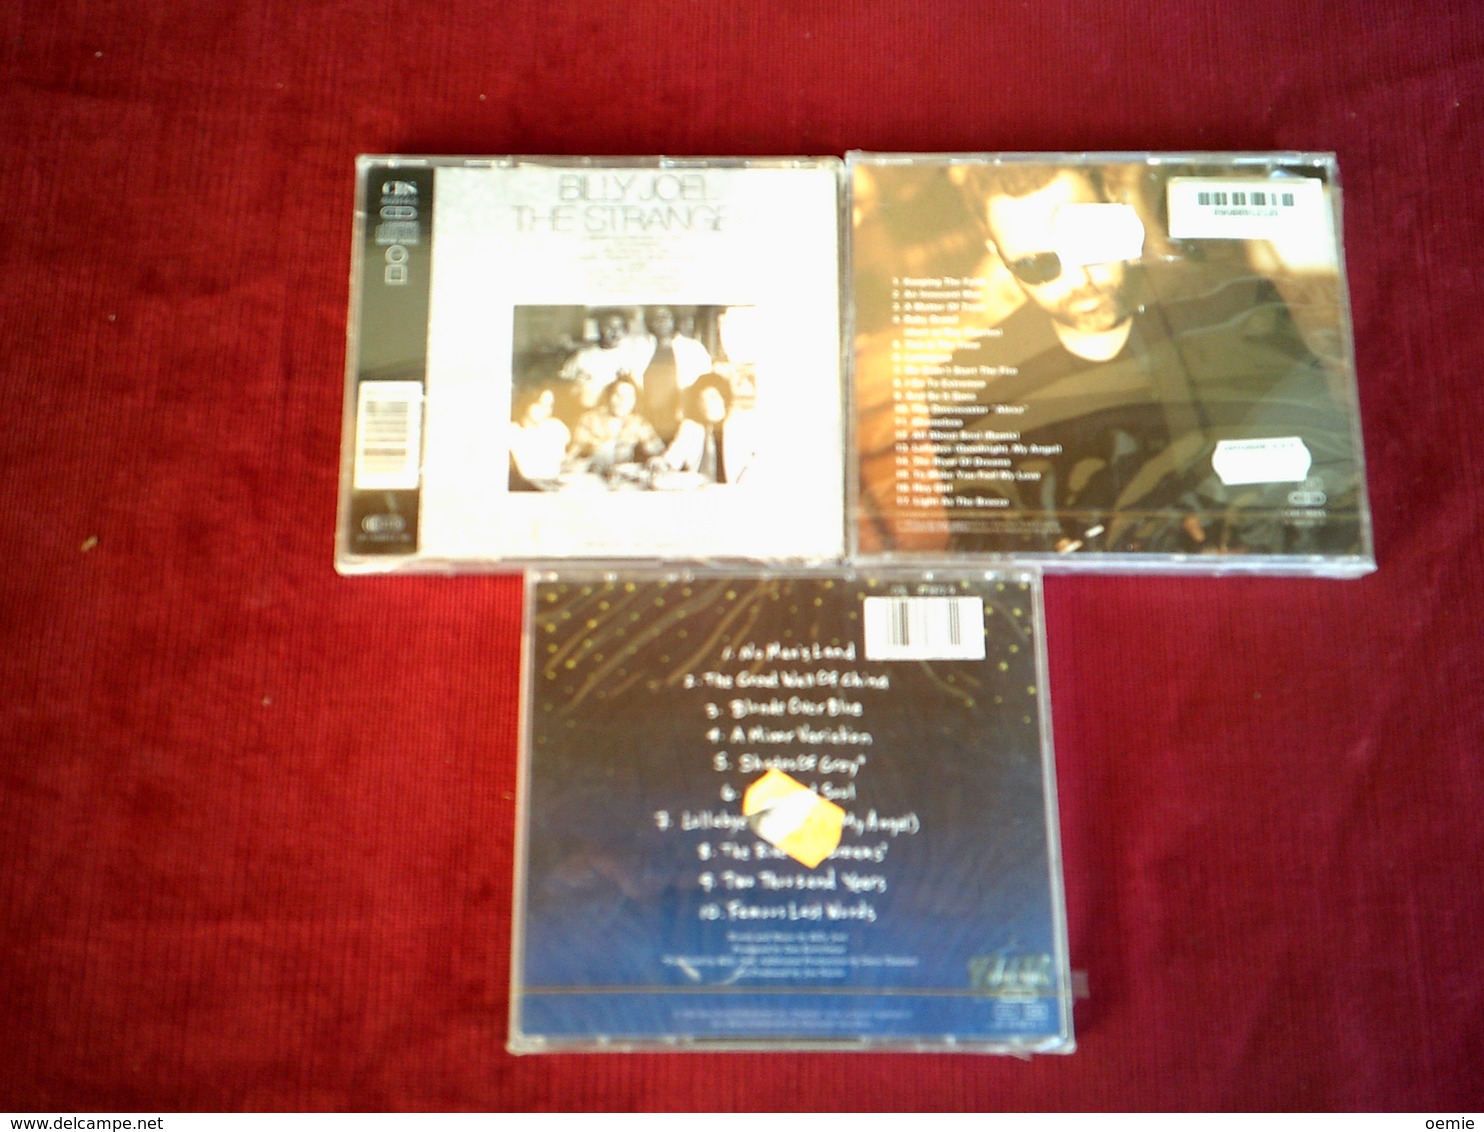 BILLY  JOEL   ° COLLECTION DE 3  CD ALBUM - Collezioni